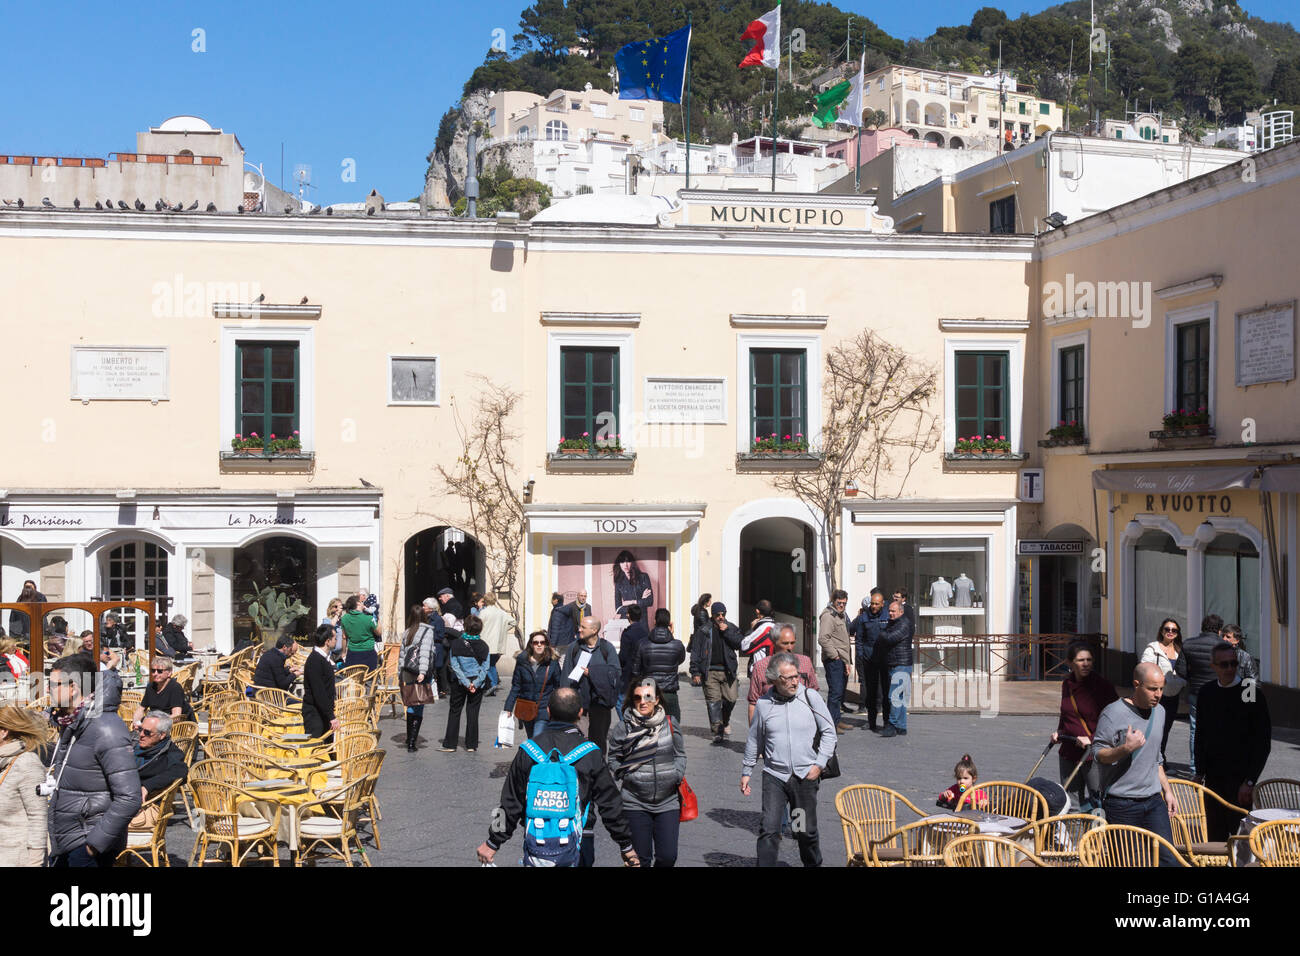 Turistas y lugareños se entremezclan en la Piazza Umberto I, o Piazzetta di Capri (que significa 'pequeña plaza'), el corazón de la vida social de Capri. Italia Foto de stock